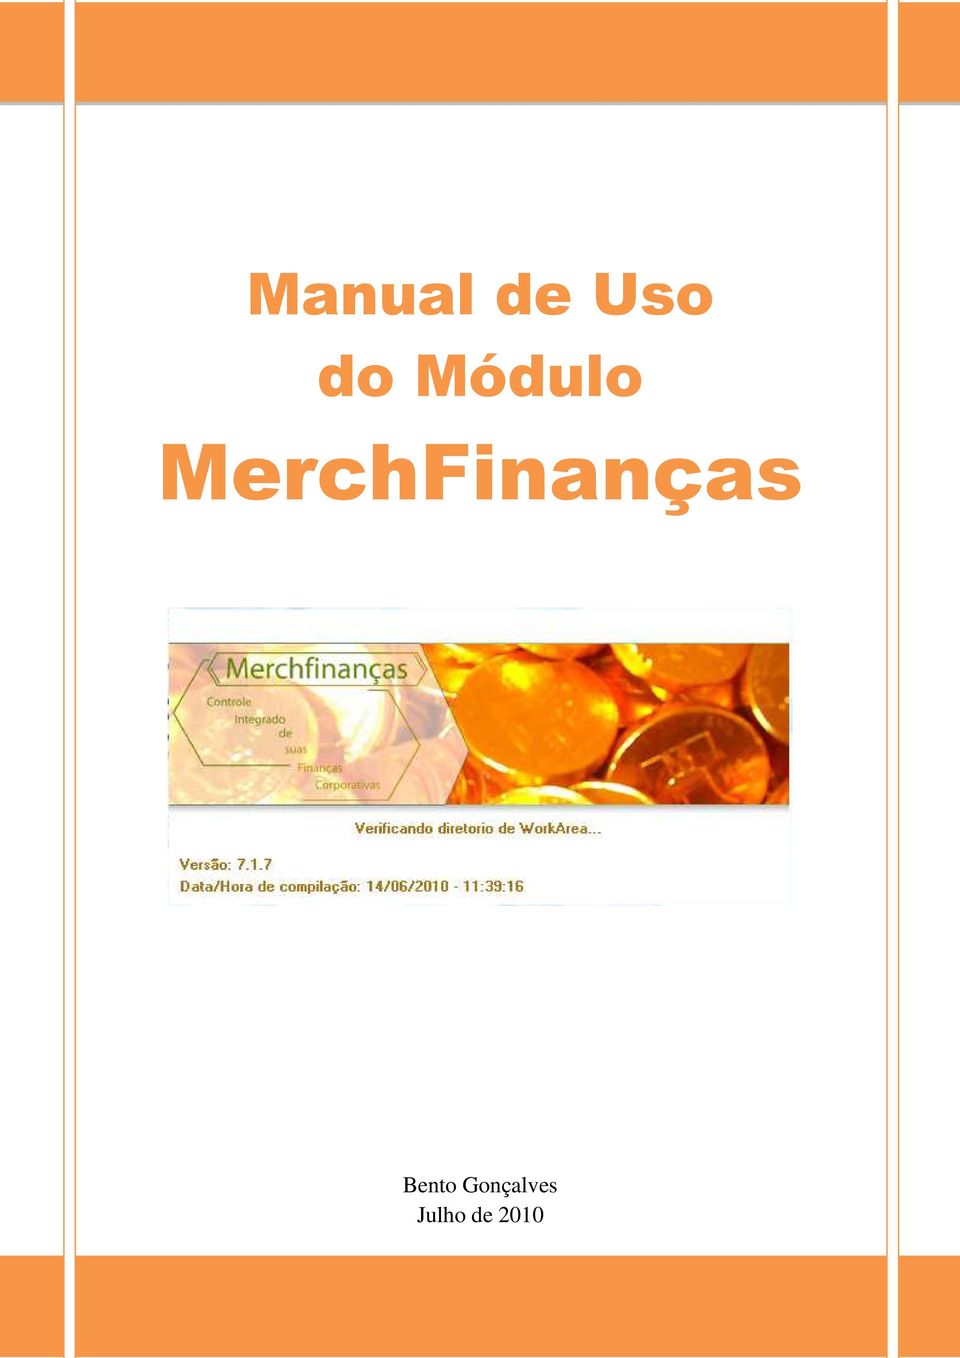 MerchFinanças